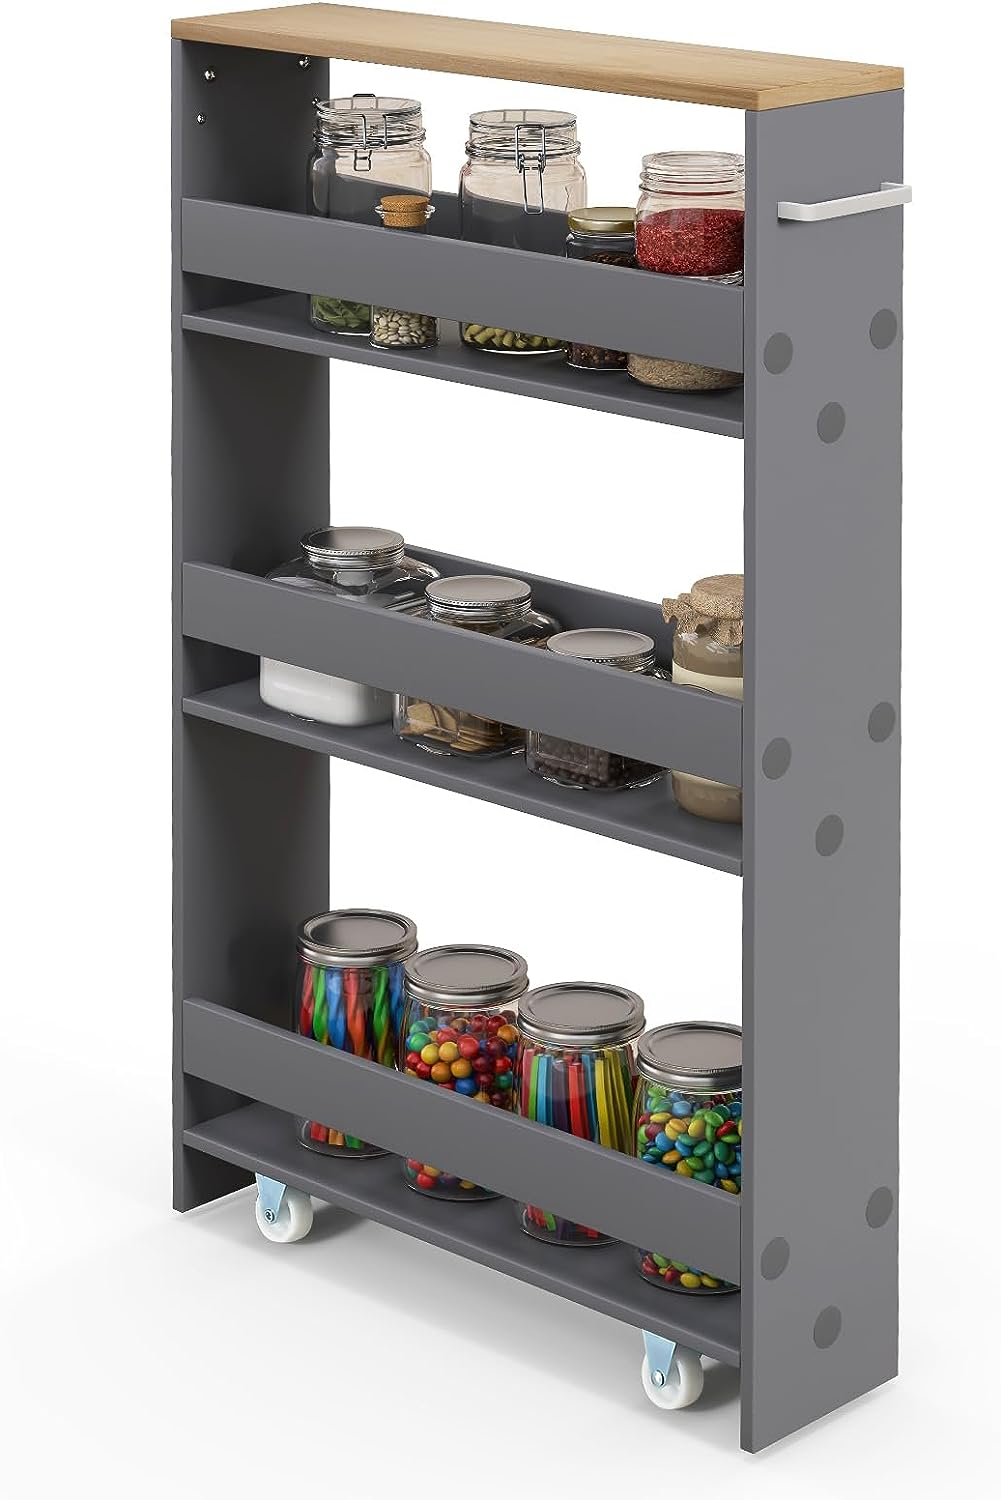 Giantex Kitchen Slim Storage Cart 4 Tier, Rolling Side Storage Cabinet w/Handle